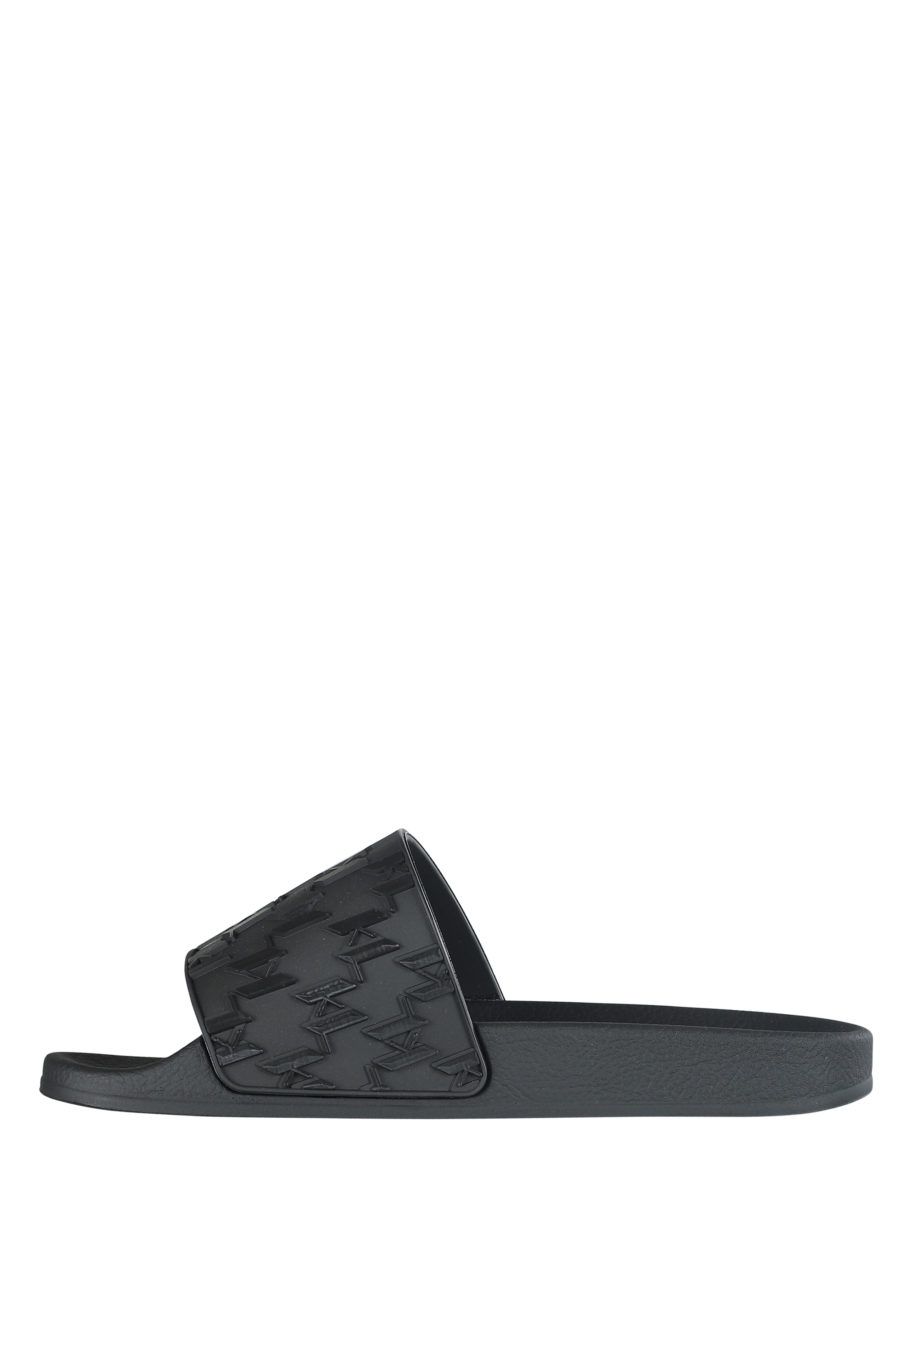 Schwarze Flip Flops mit schwarzem Monogramm - IMG 5326